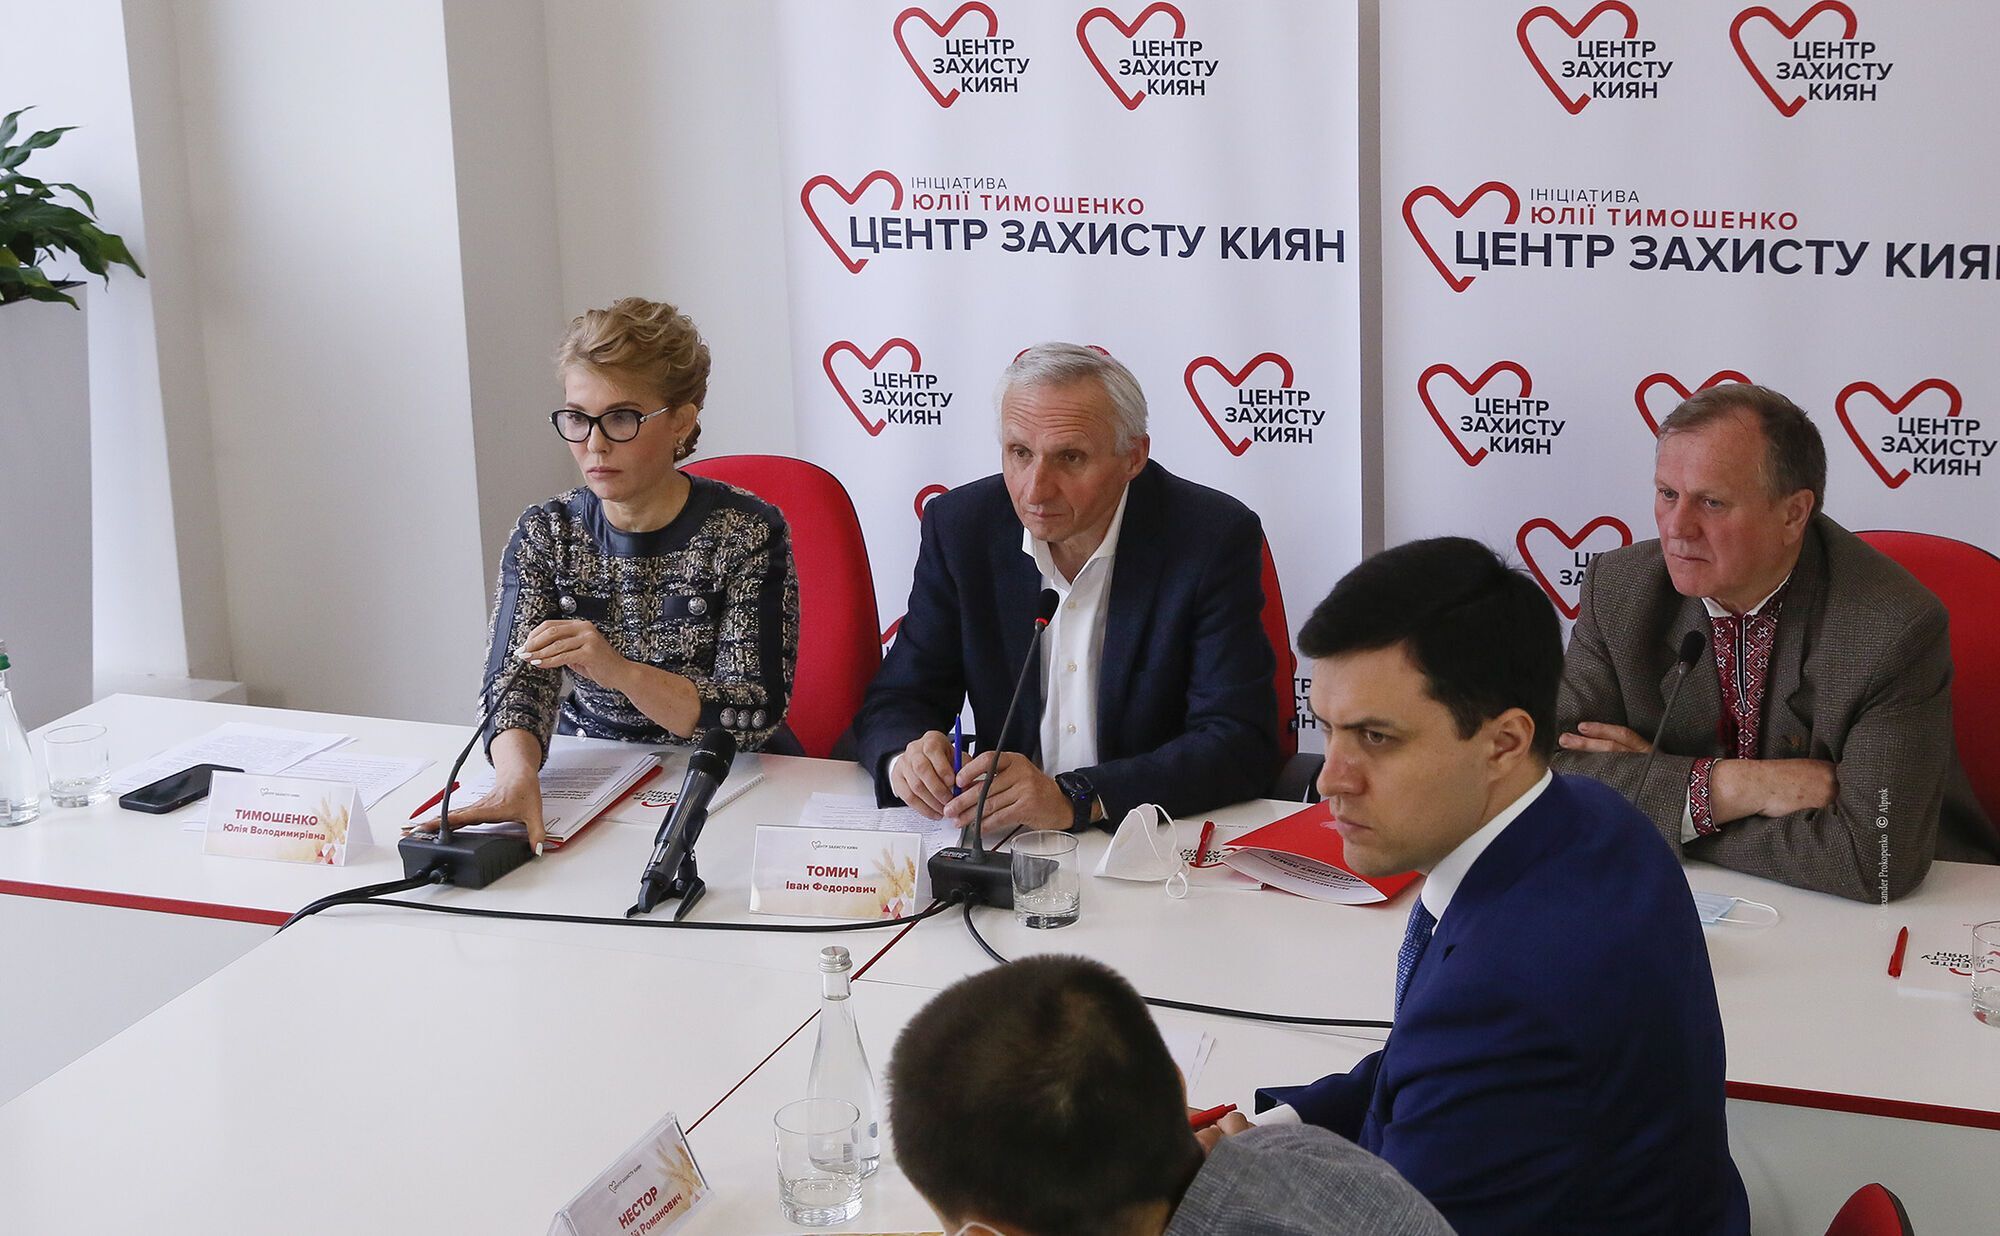 Тимошенко призвала присутствующих разработать план действий для противодействия тотальной и бесконтрольной распродаже земли